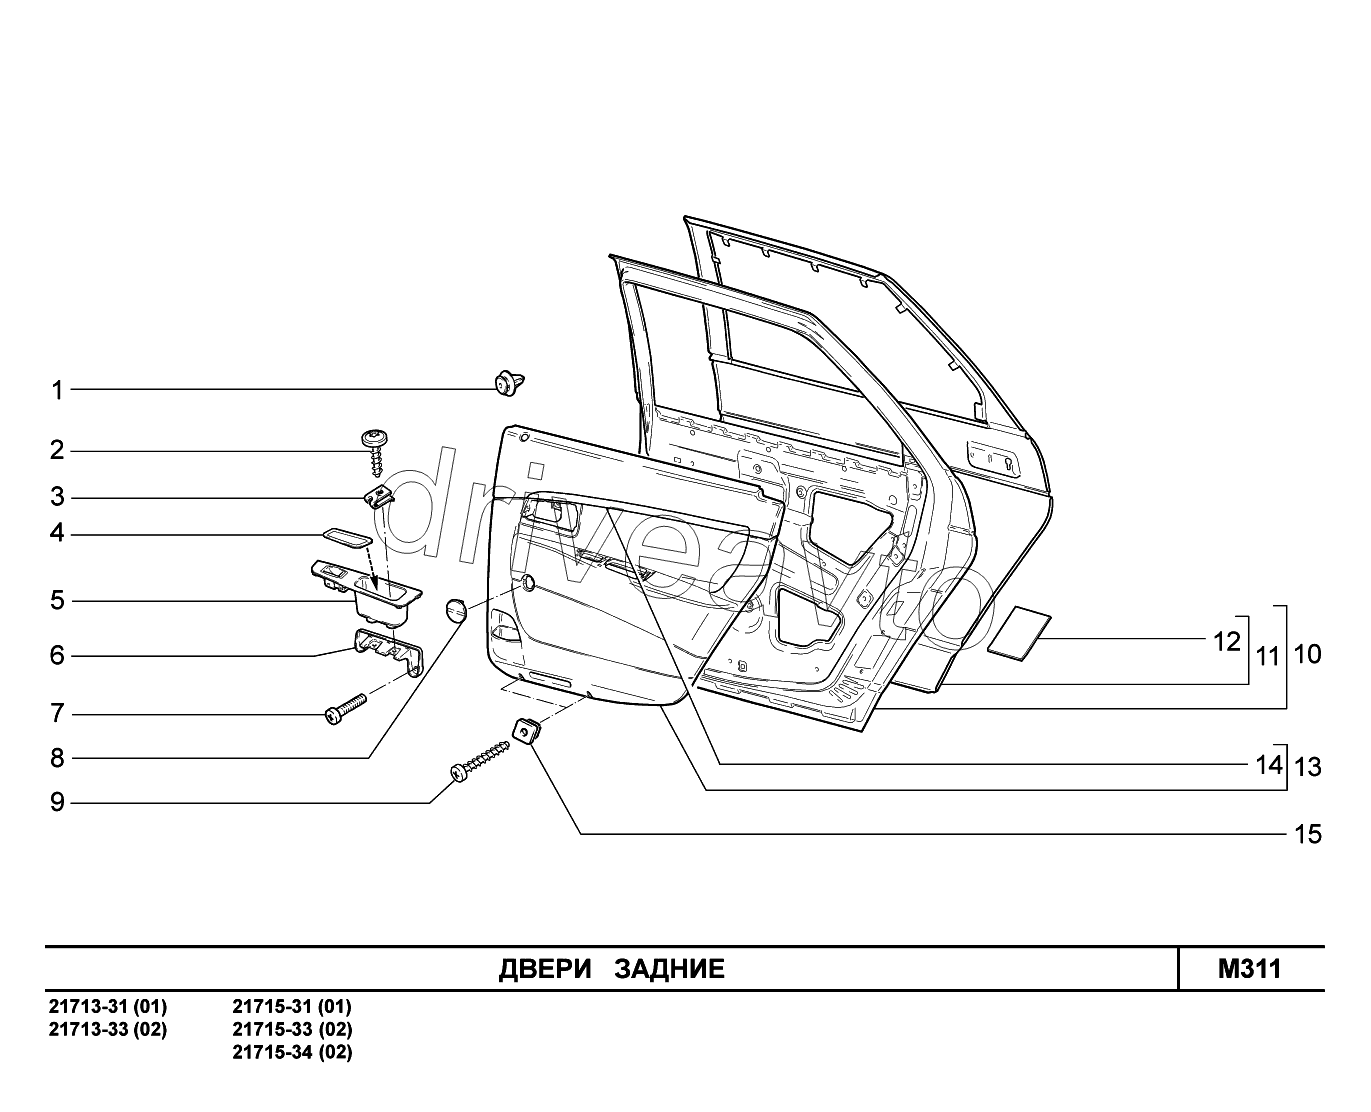 M311. Двери задние